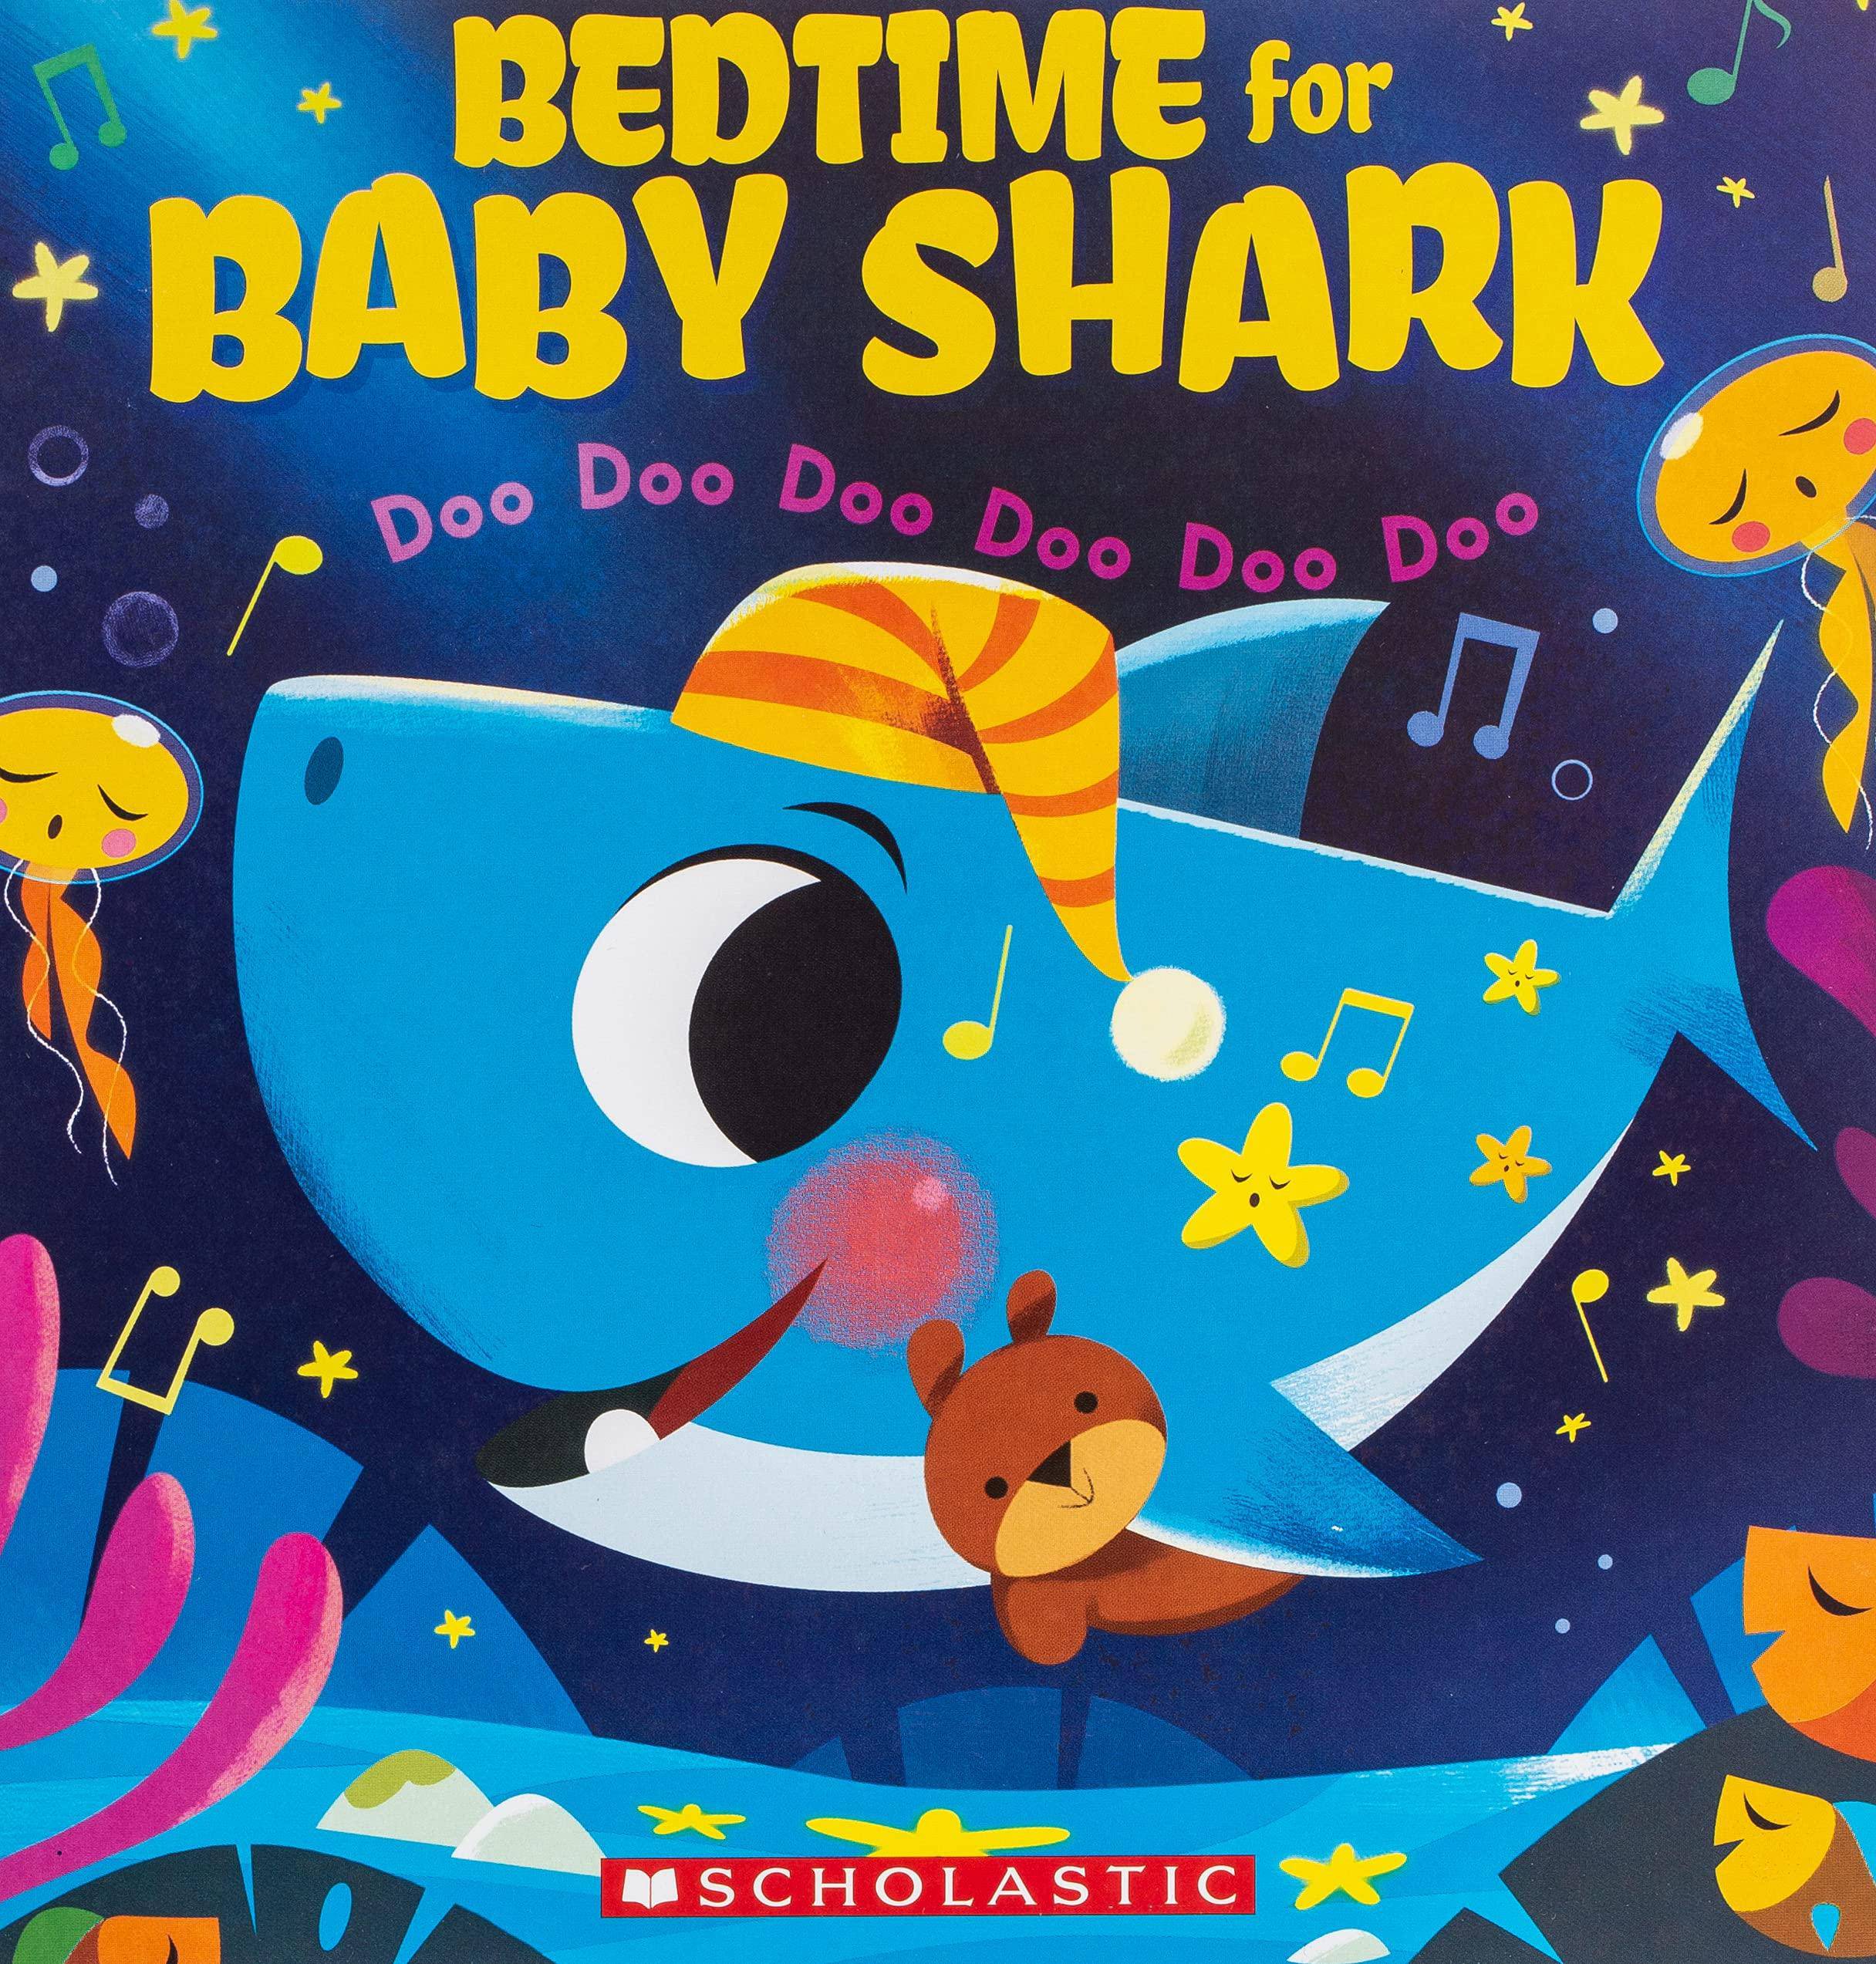 Bedtime for Baby Shark: Doo Doo Doo Doo Doo Doo - SureShot Books Publishing LLC